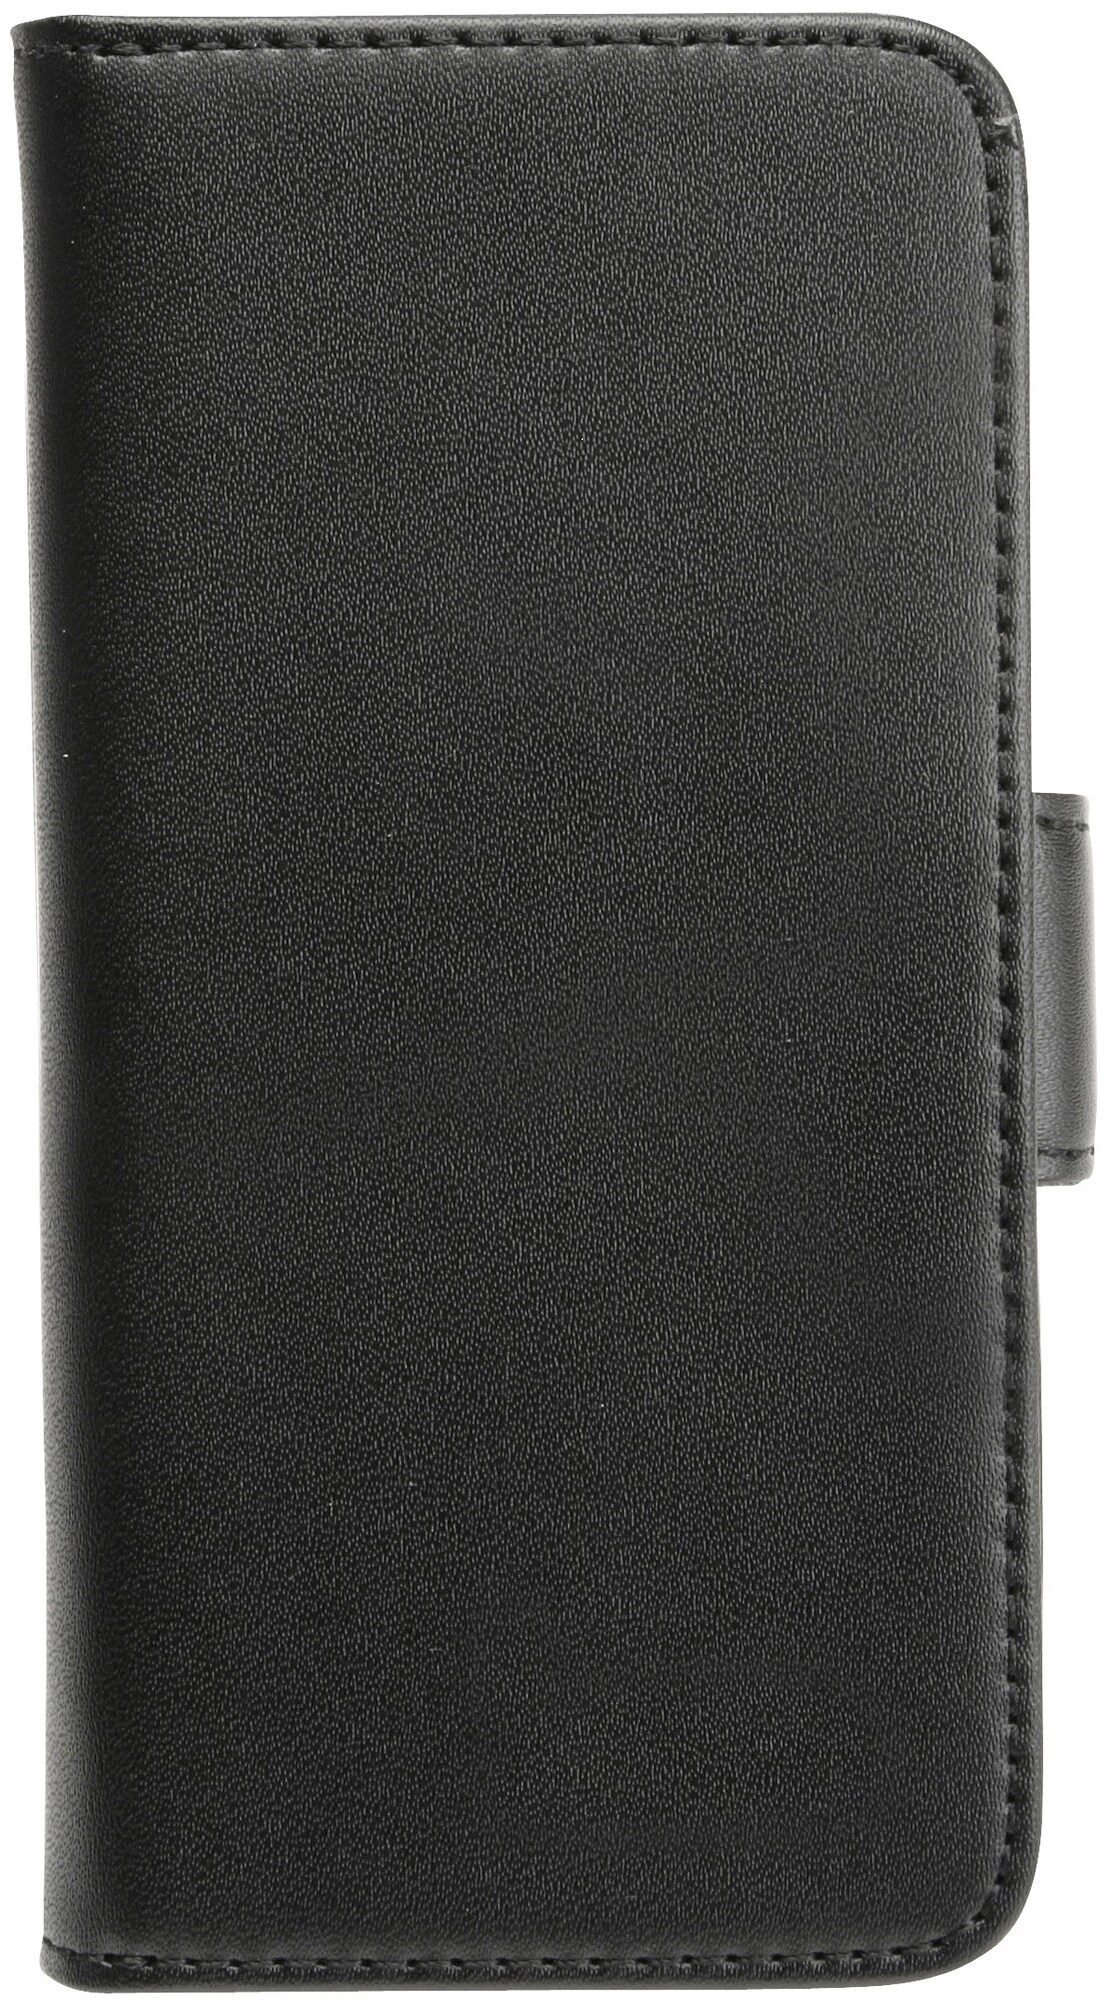 Gear Plånboksväska för iPhone 5s (svart) - Elgiganten